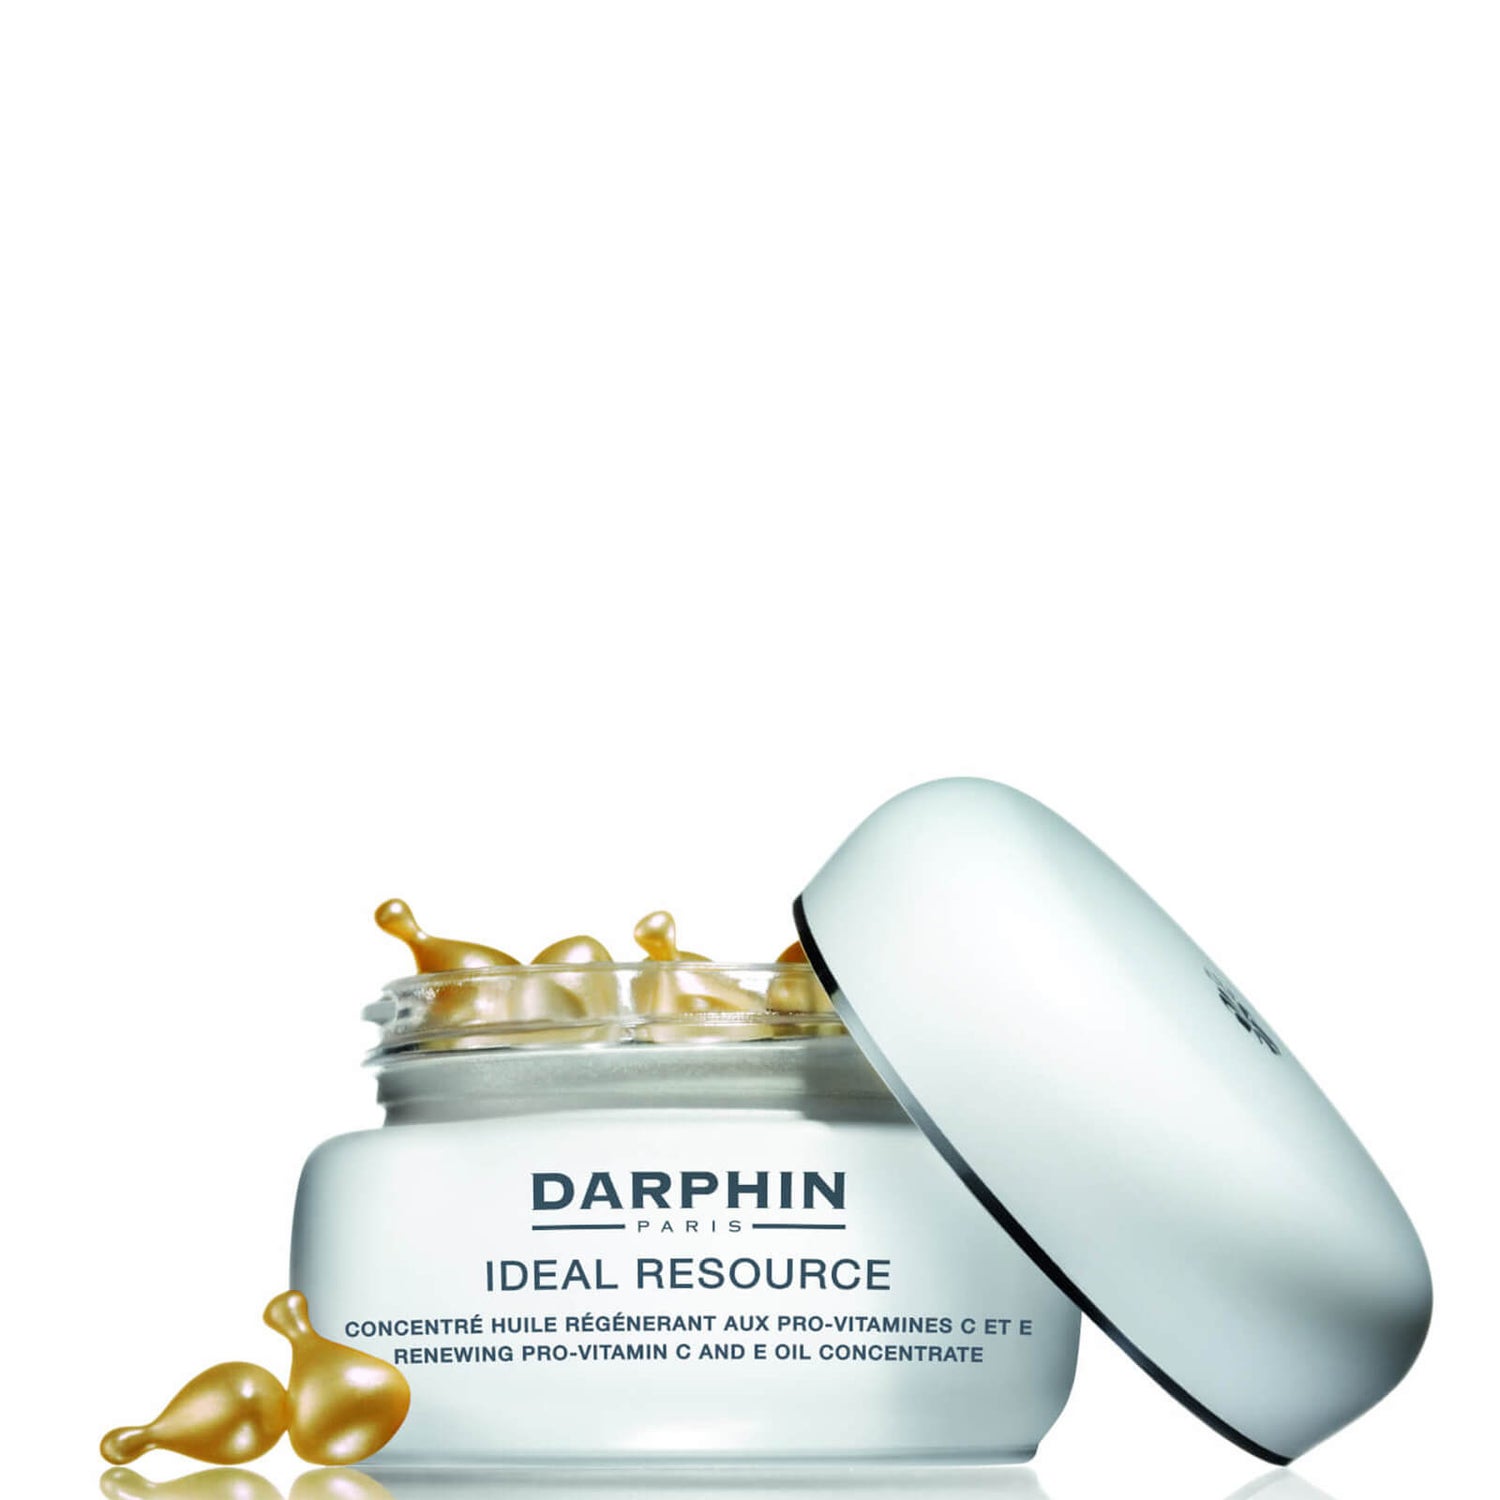 Darphin Renewing Pro-Vitamin C and E Oil Concentrate (60 Capsules)